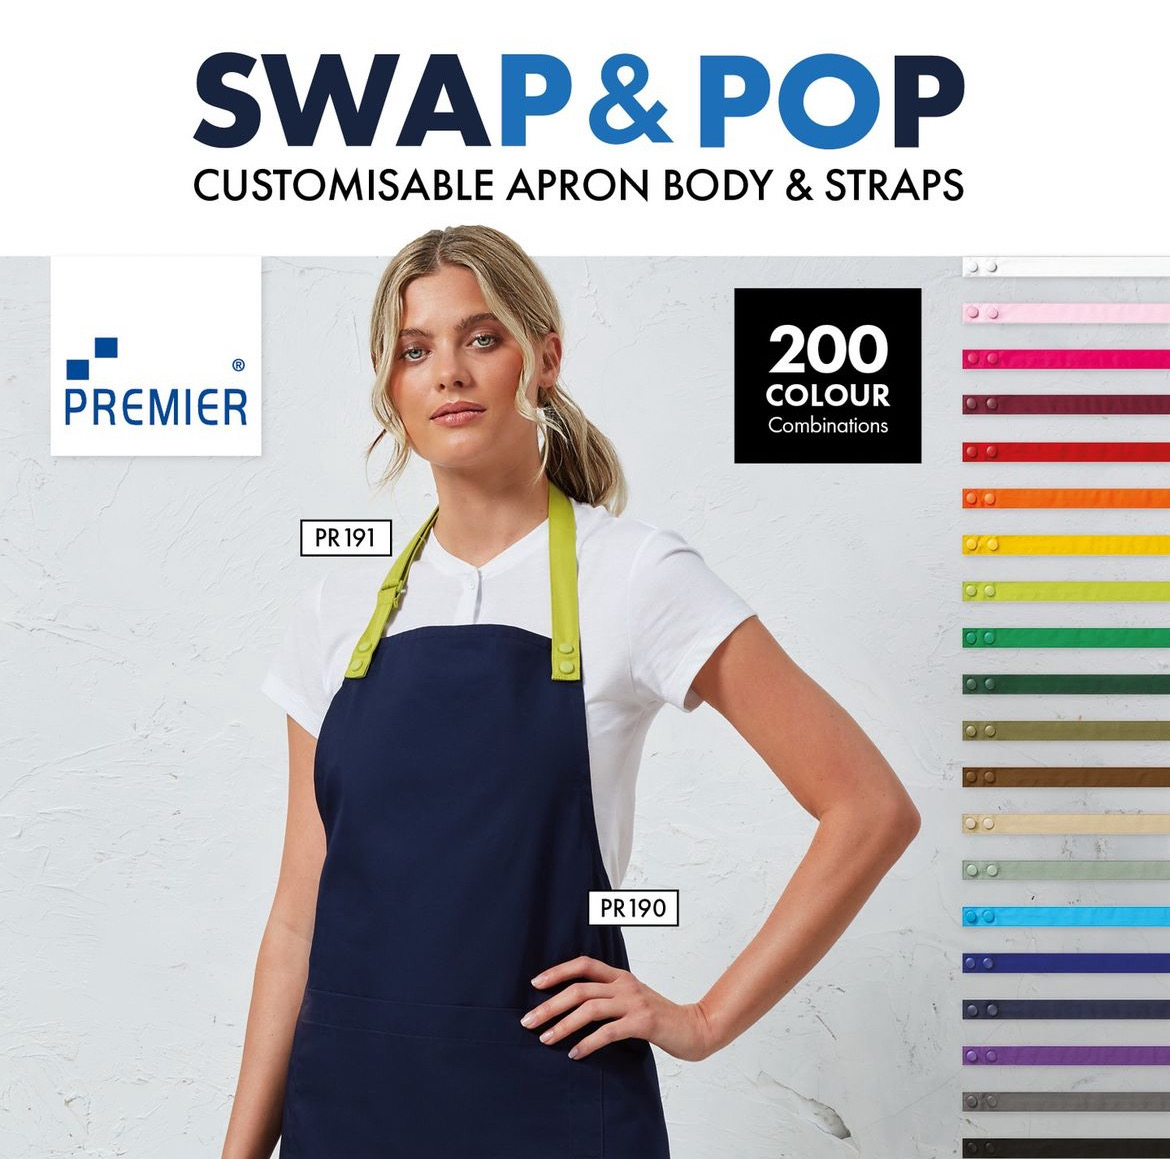 Premier Swap & Pop Customisable Apron – Straps